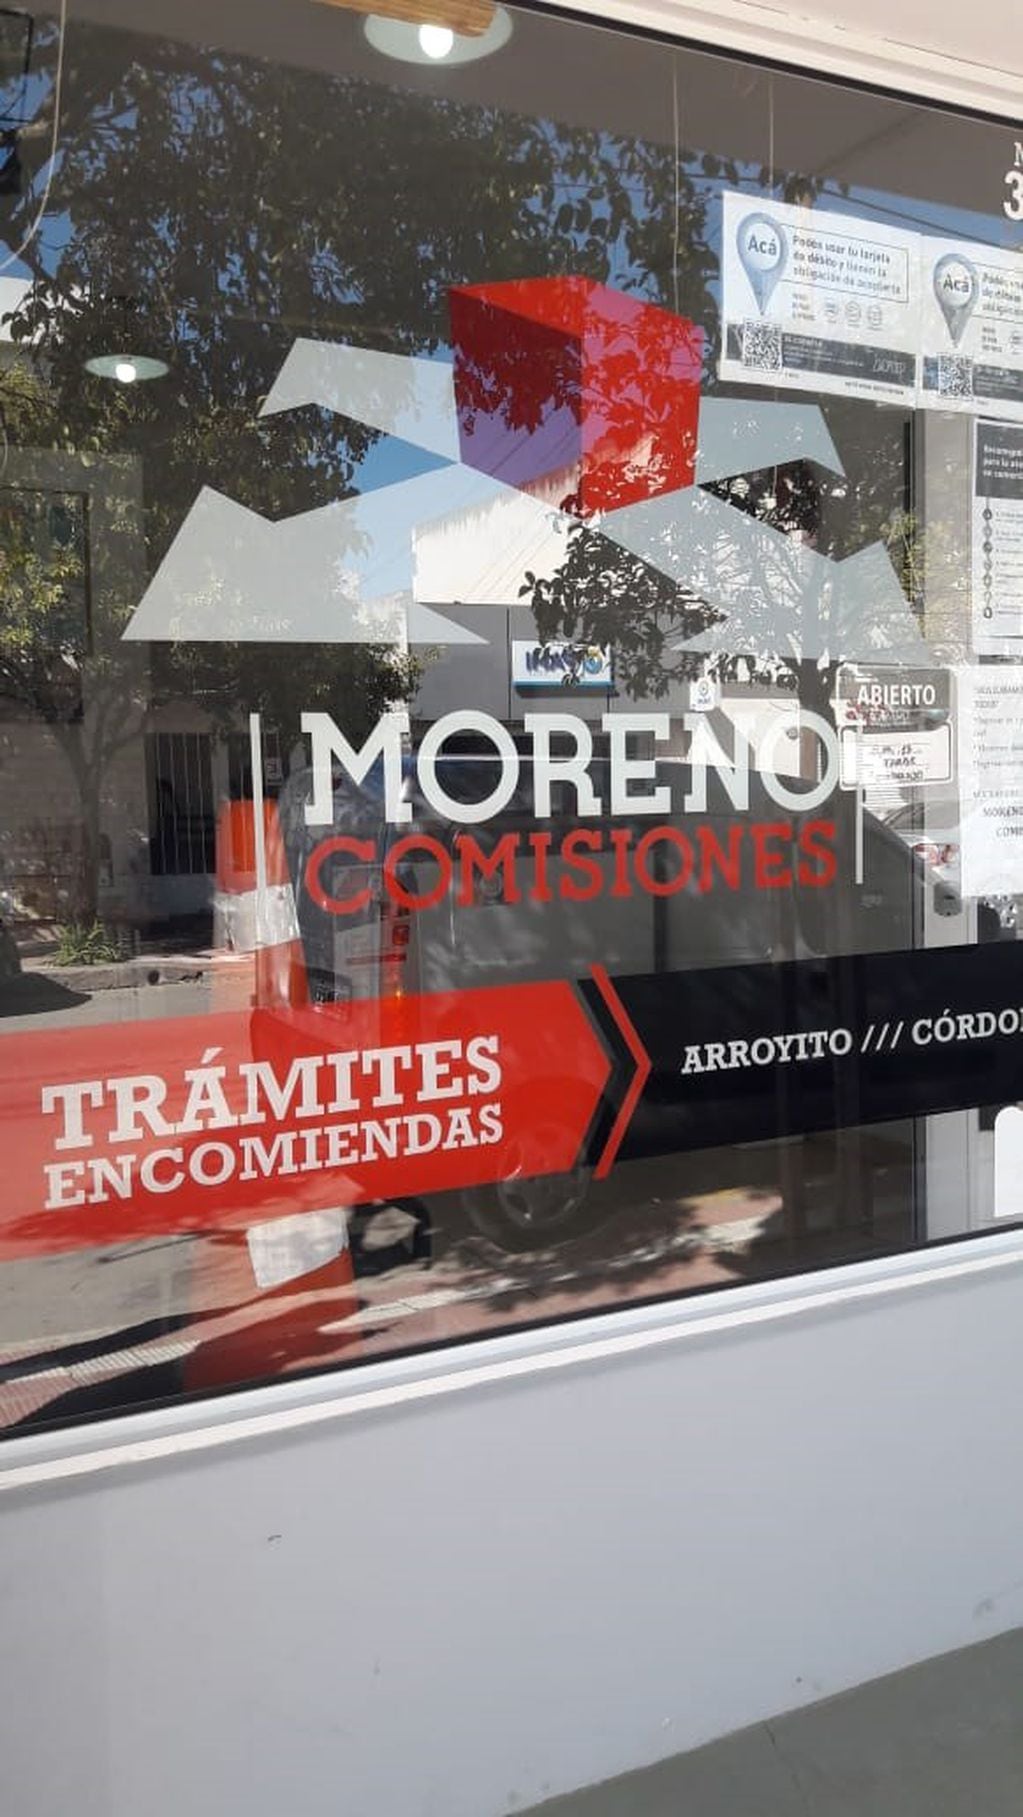 Pablo Moreno Moreno Comisiones Arroyito